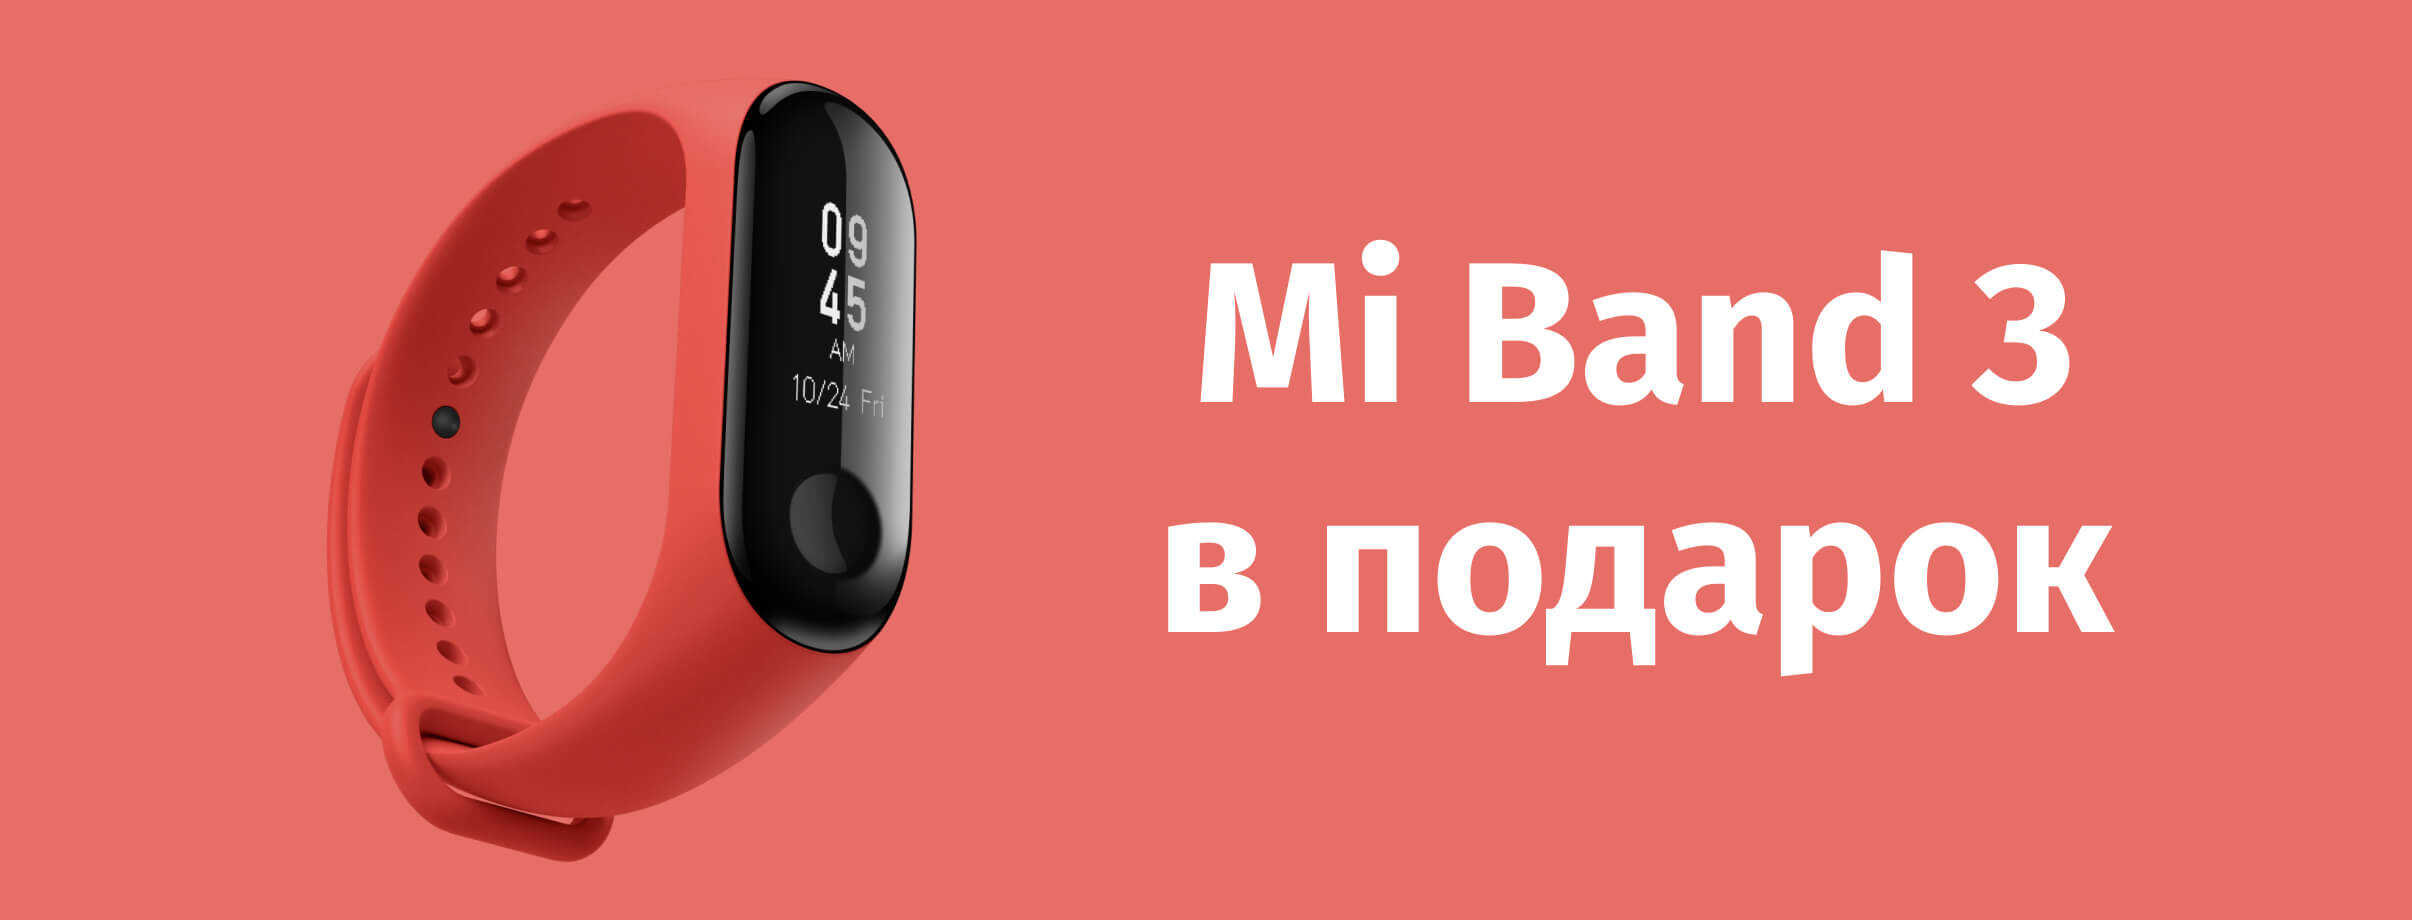 При покупке Xiaomi Mi A2 или Mi A2 lite, Mi Band 3 в подарок!